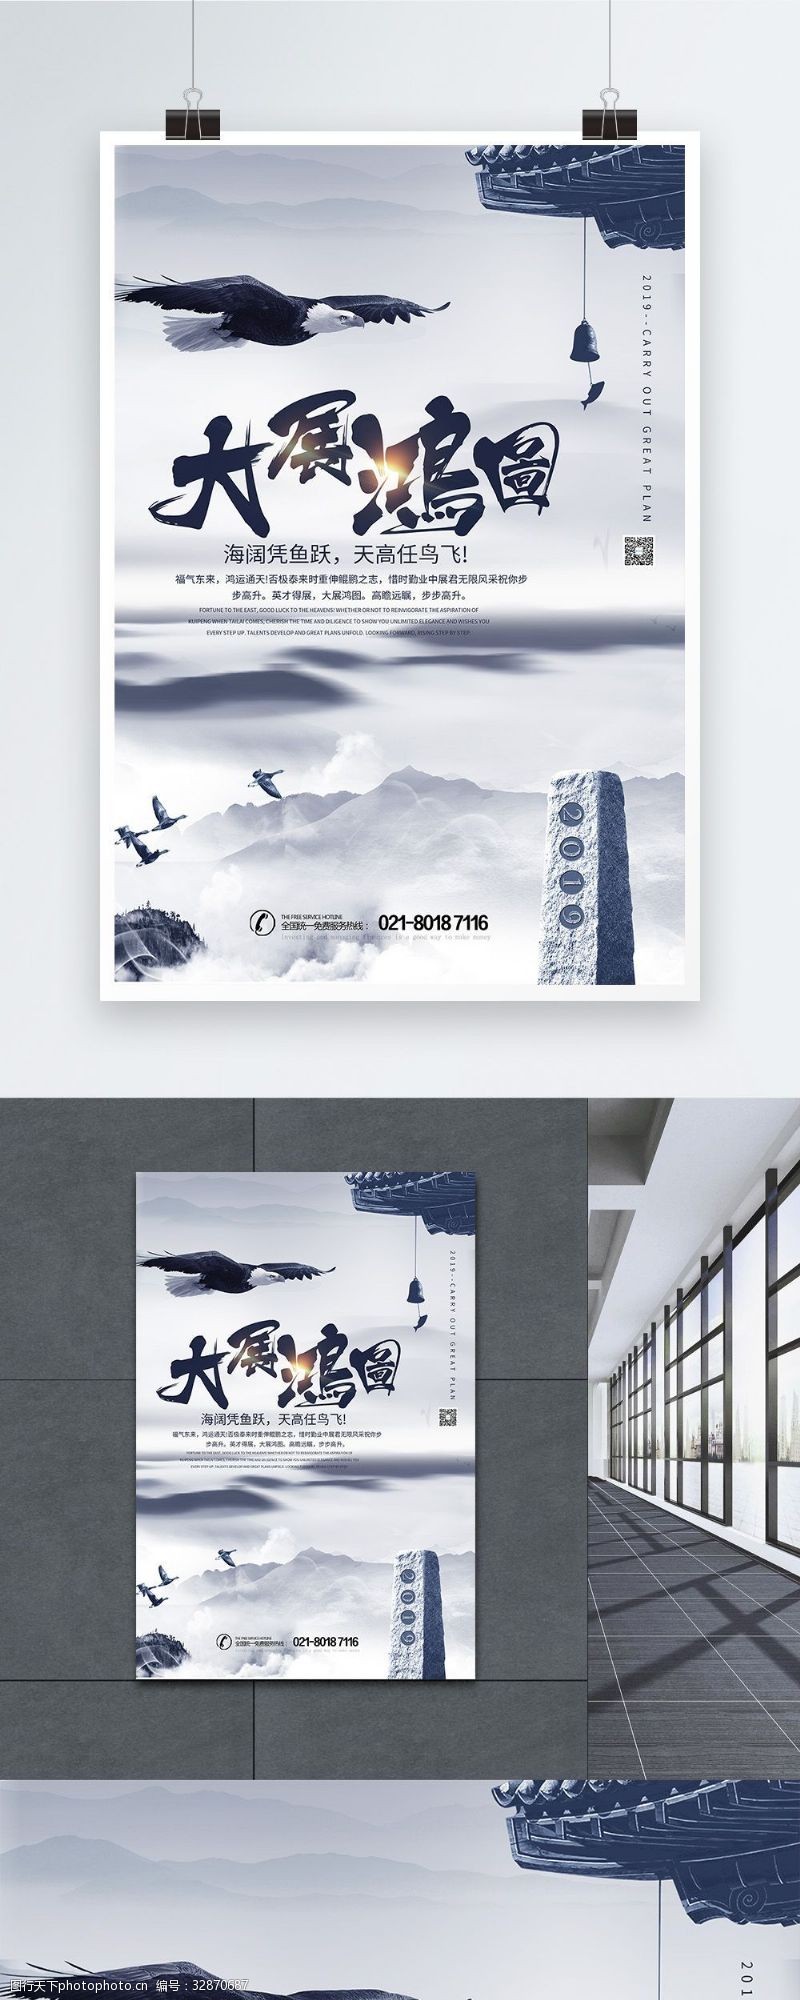 公司福利2019大展鸿图企业文化海报设计